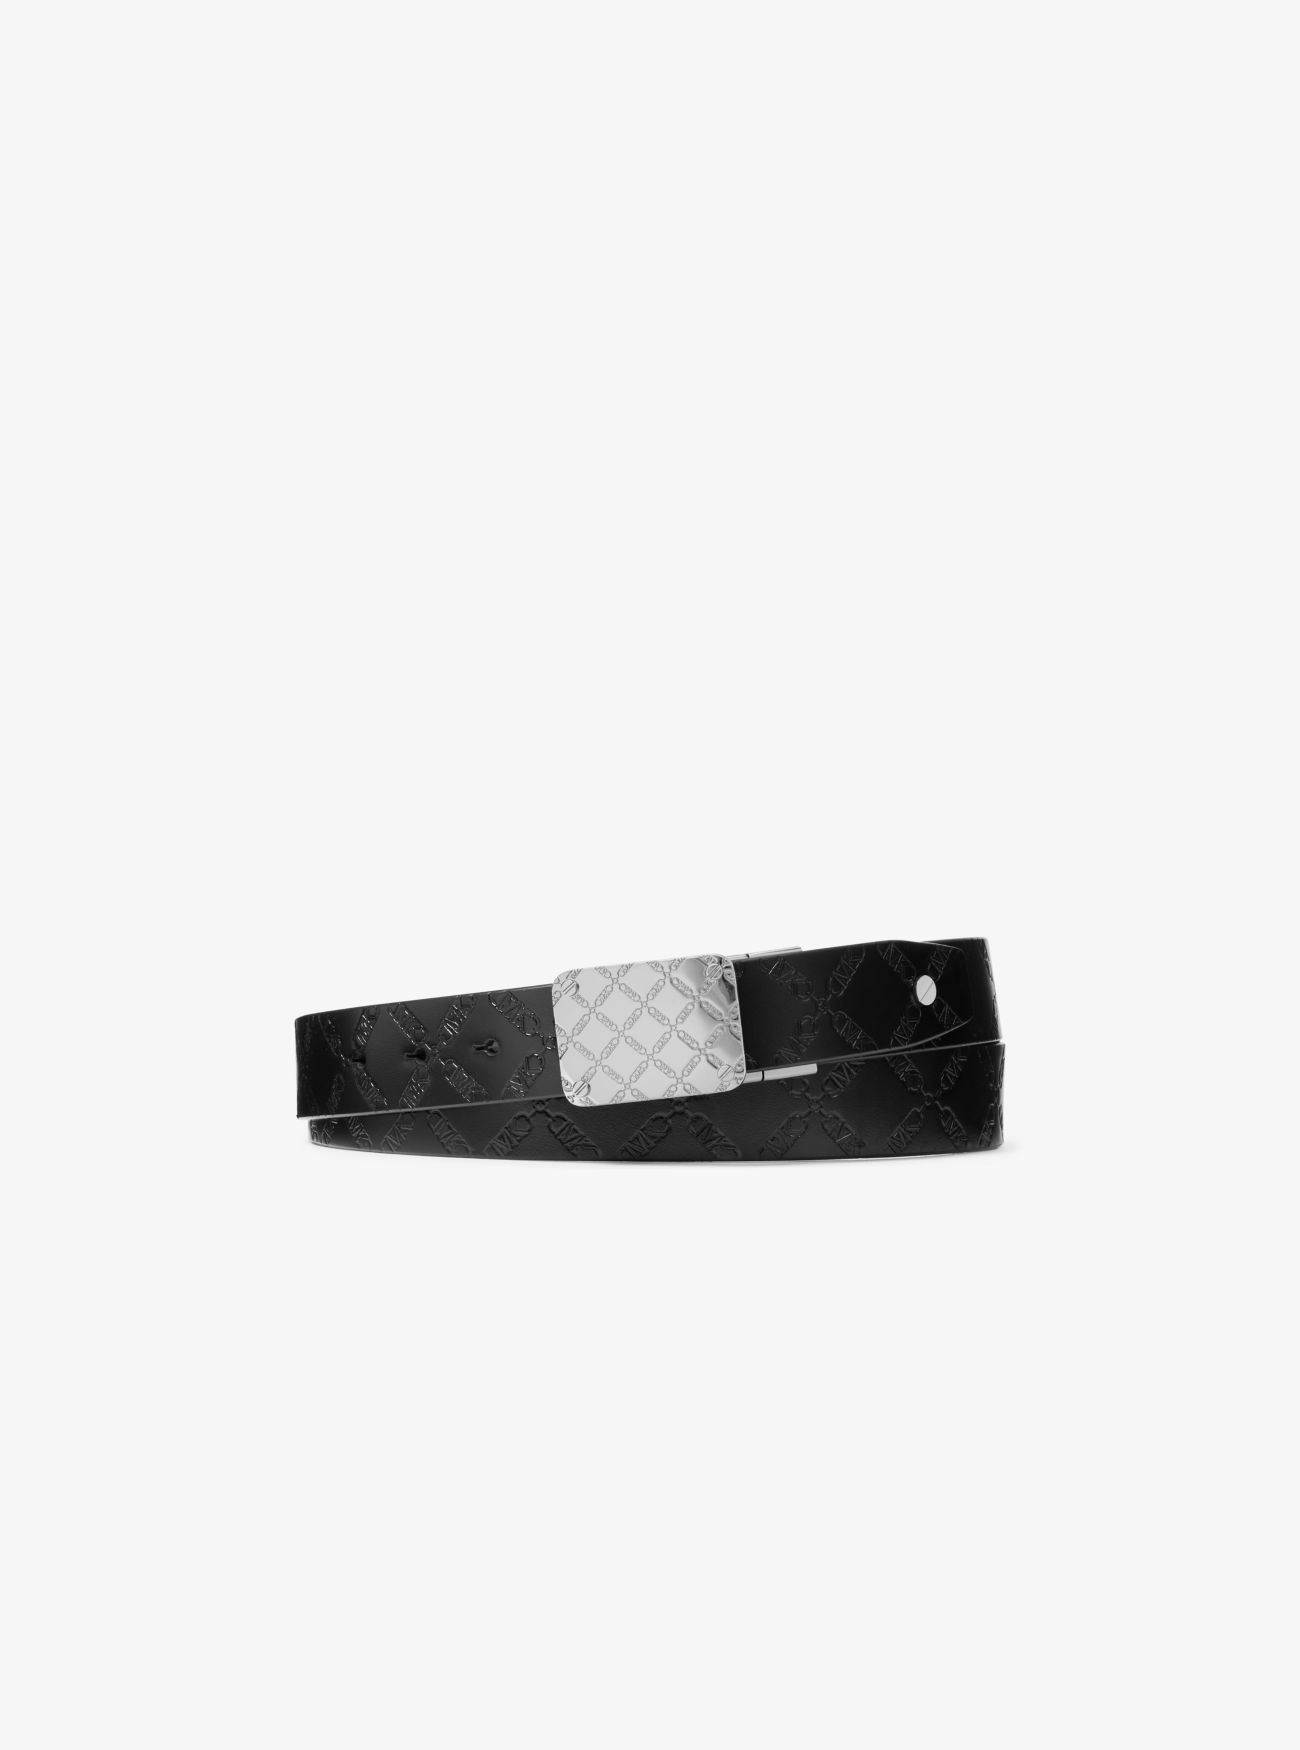 MK Reversible Empire Logo Embossed Leather Belt - Black - Michael Kors